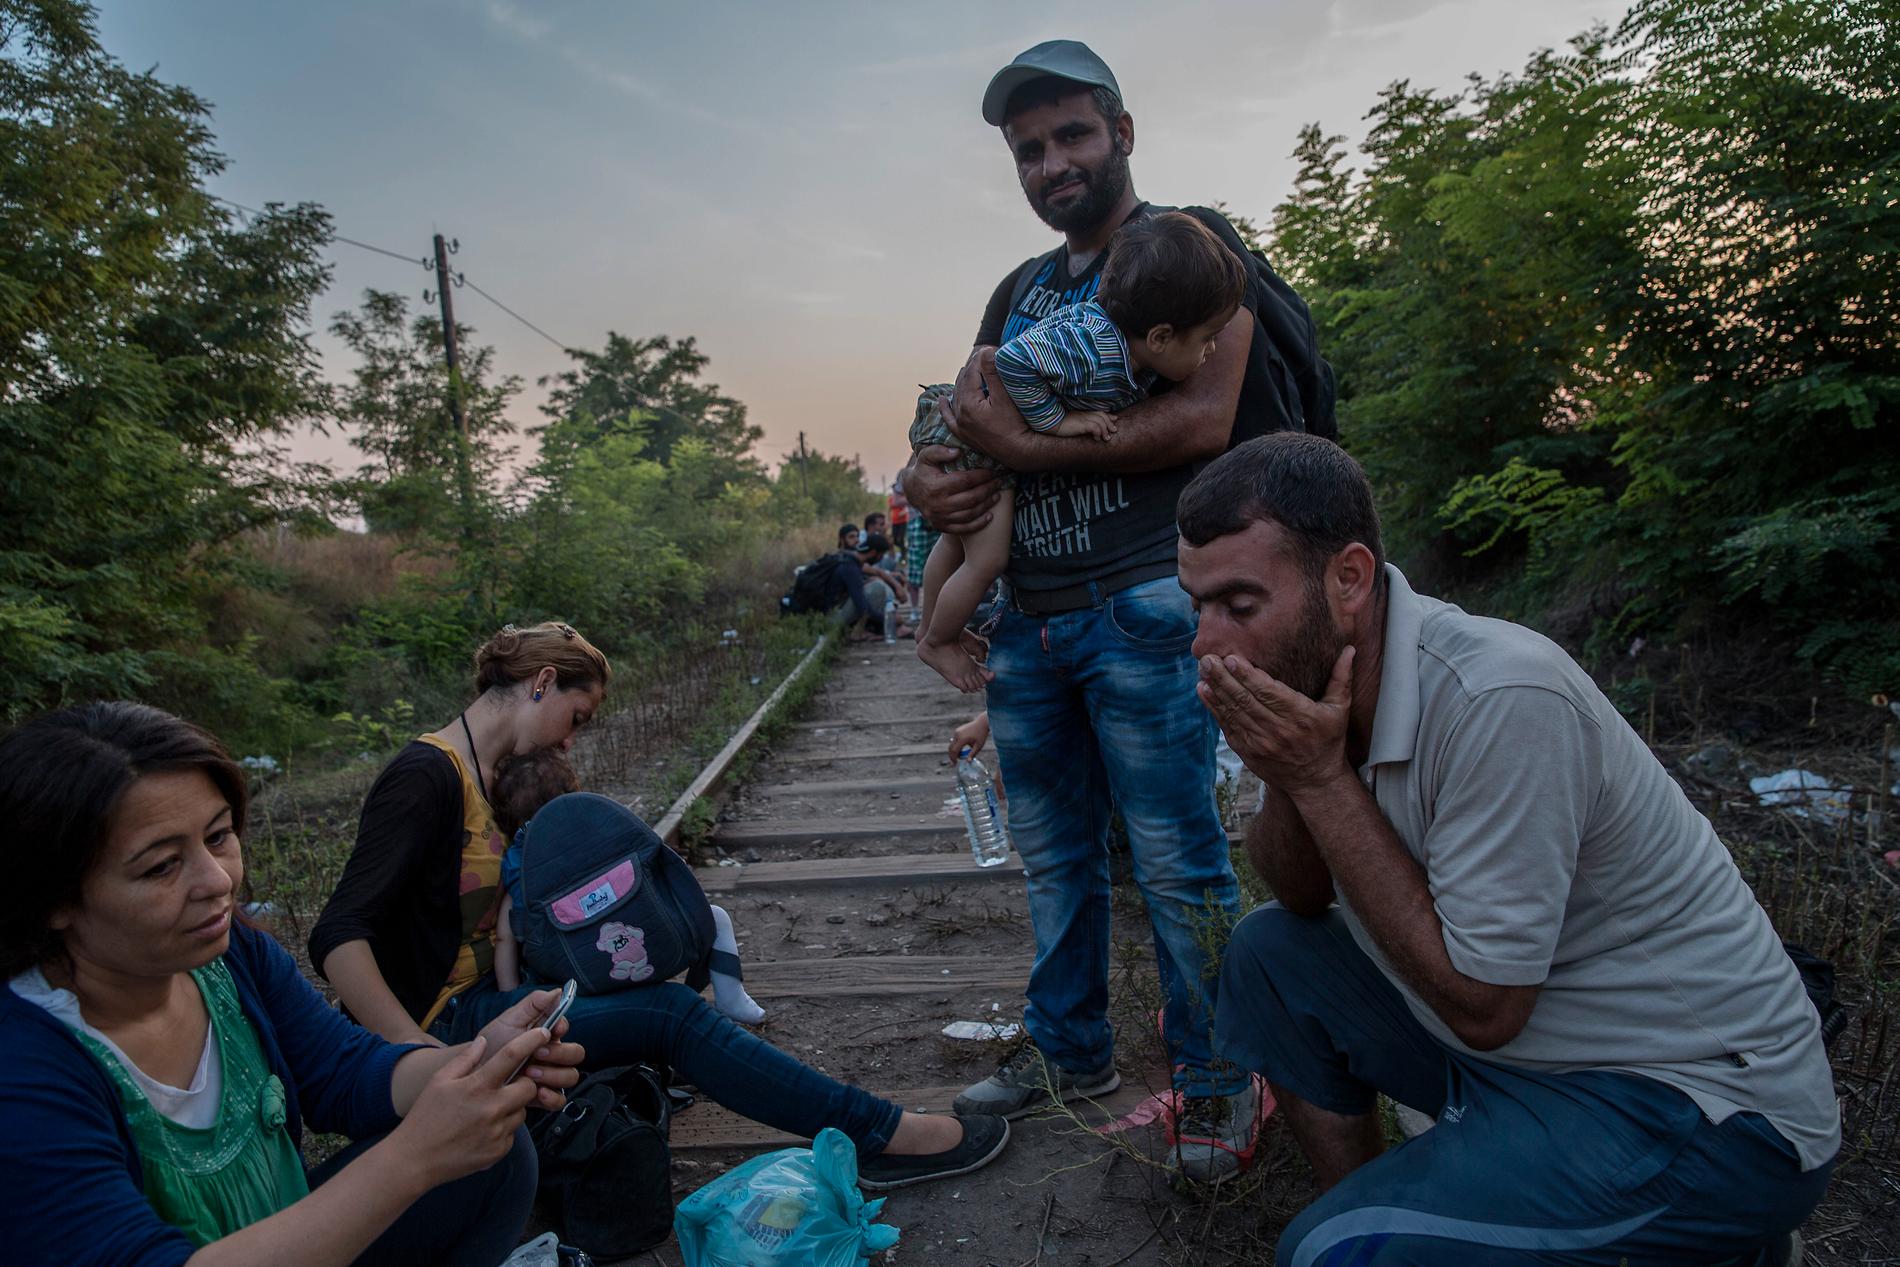 Familjen försöker korsa gränsen mellan Serbien och Ungern illegalt.